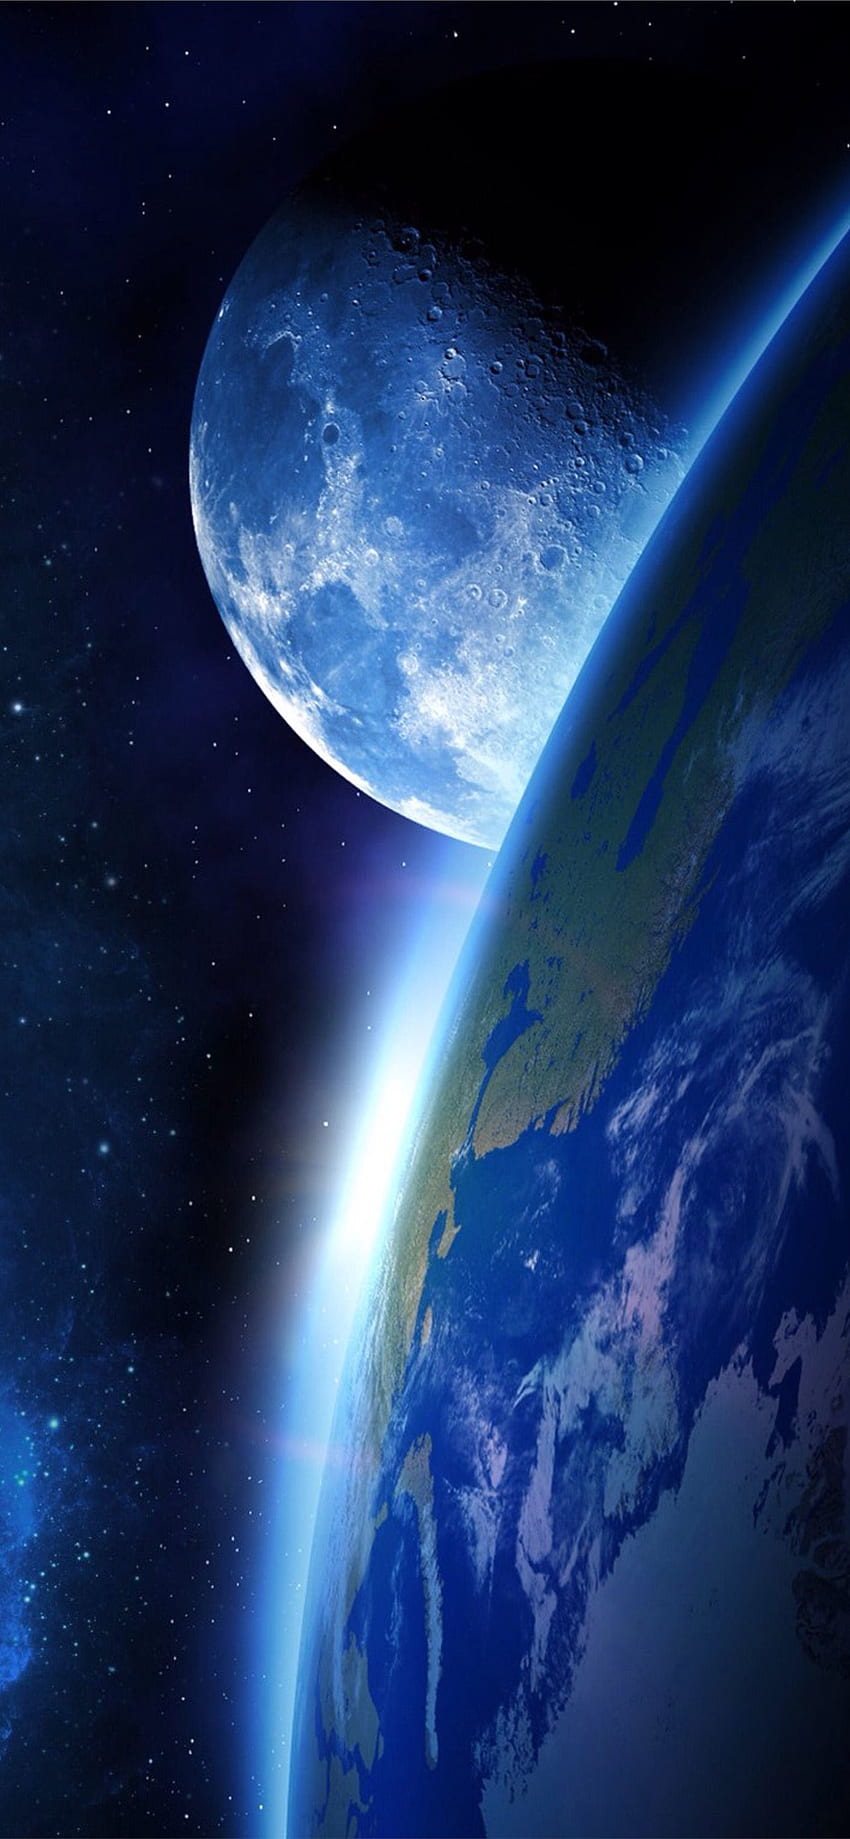 Bumi terbaik dari luar angkasa iPhone, Earth Mobile wallpaper ponsel HD